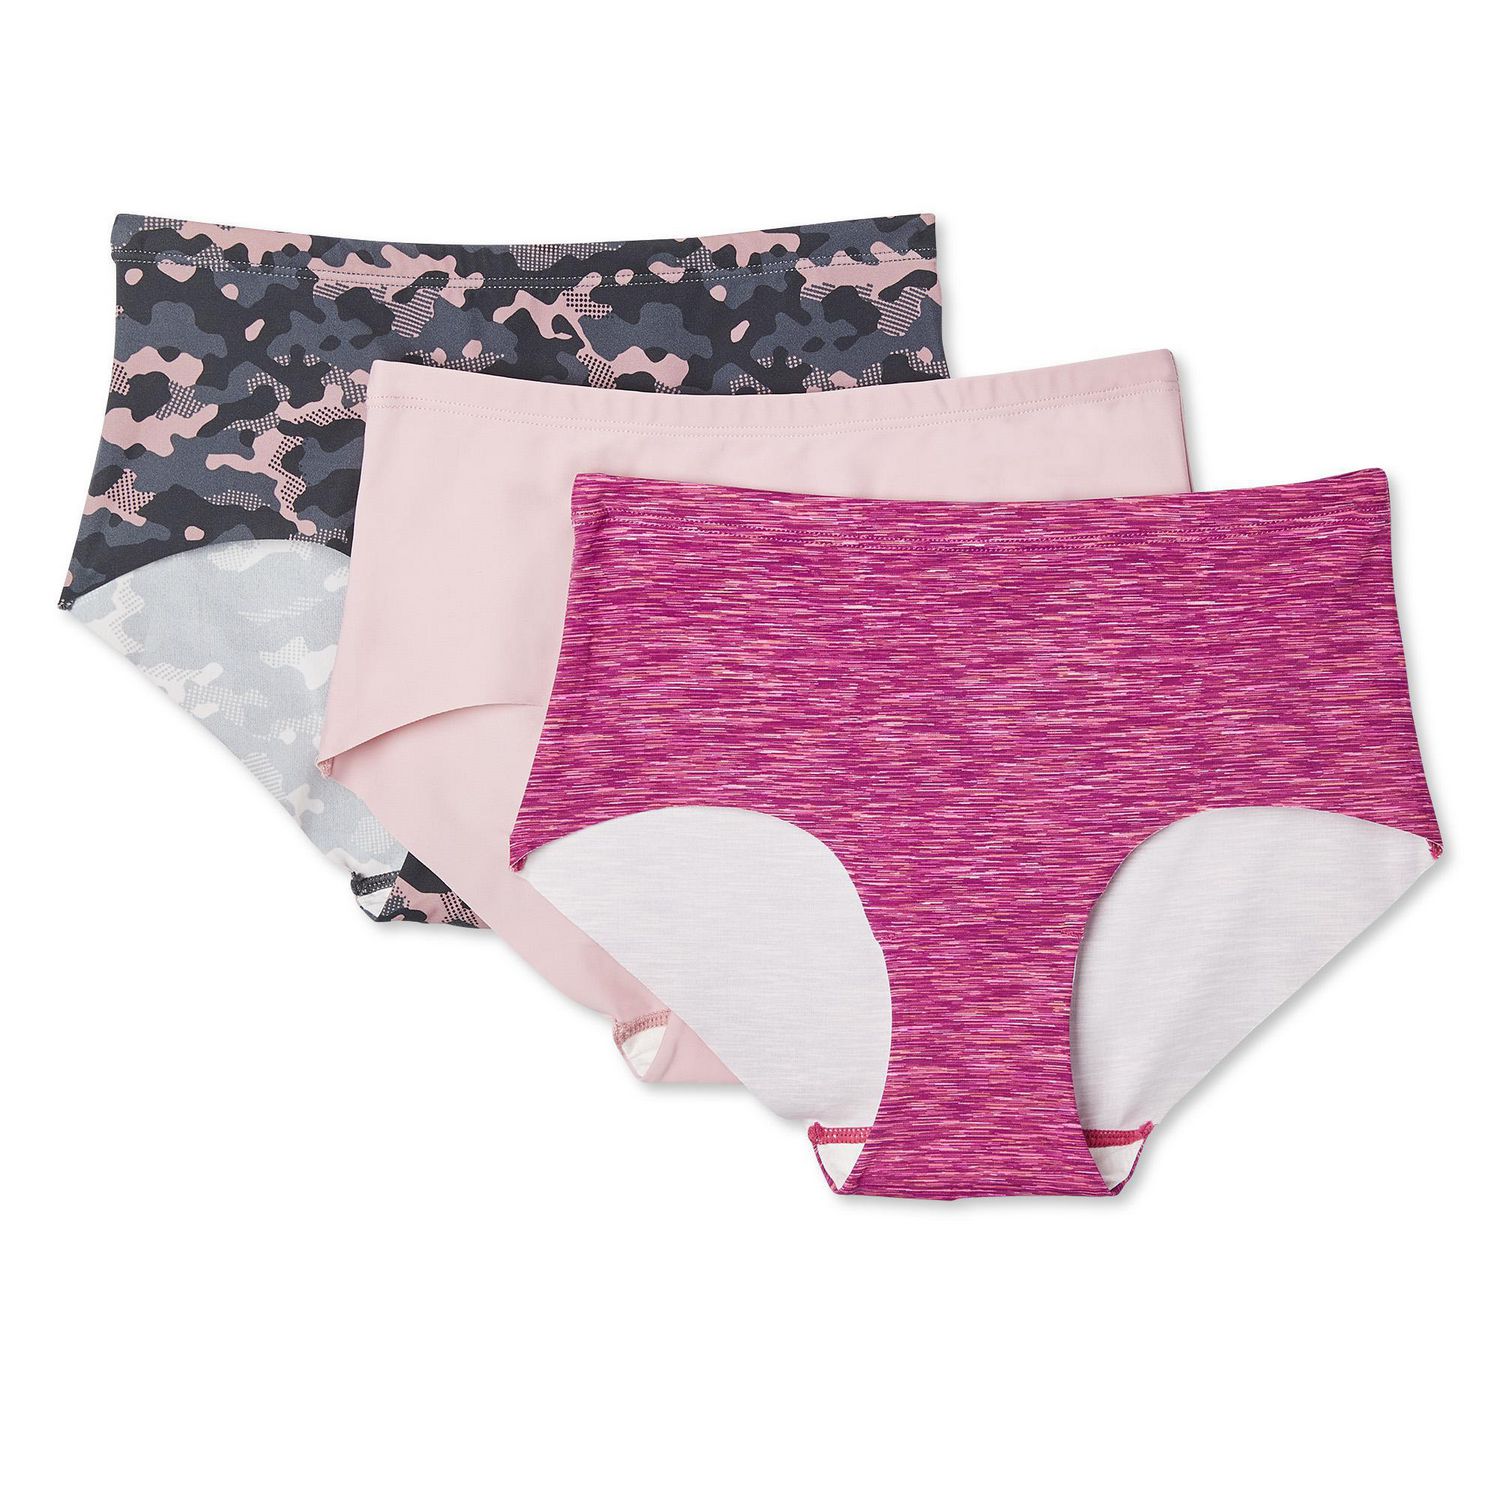 Different women's underwear #fyp #panties #underwear #girls